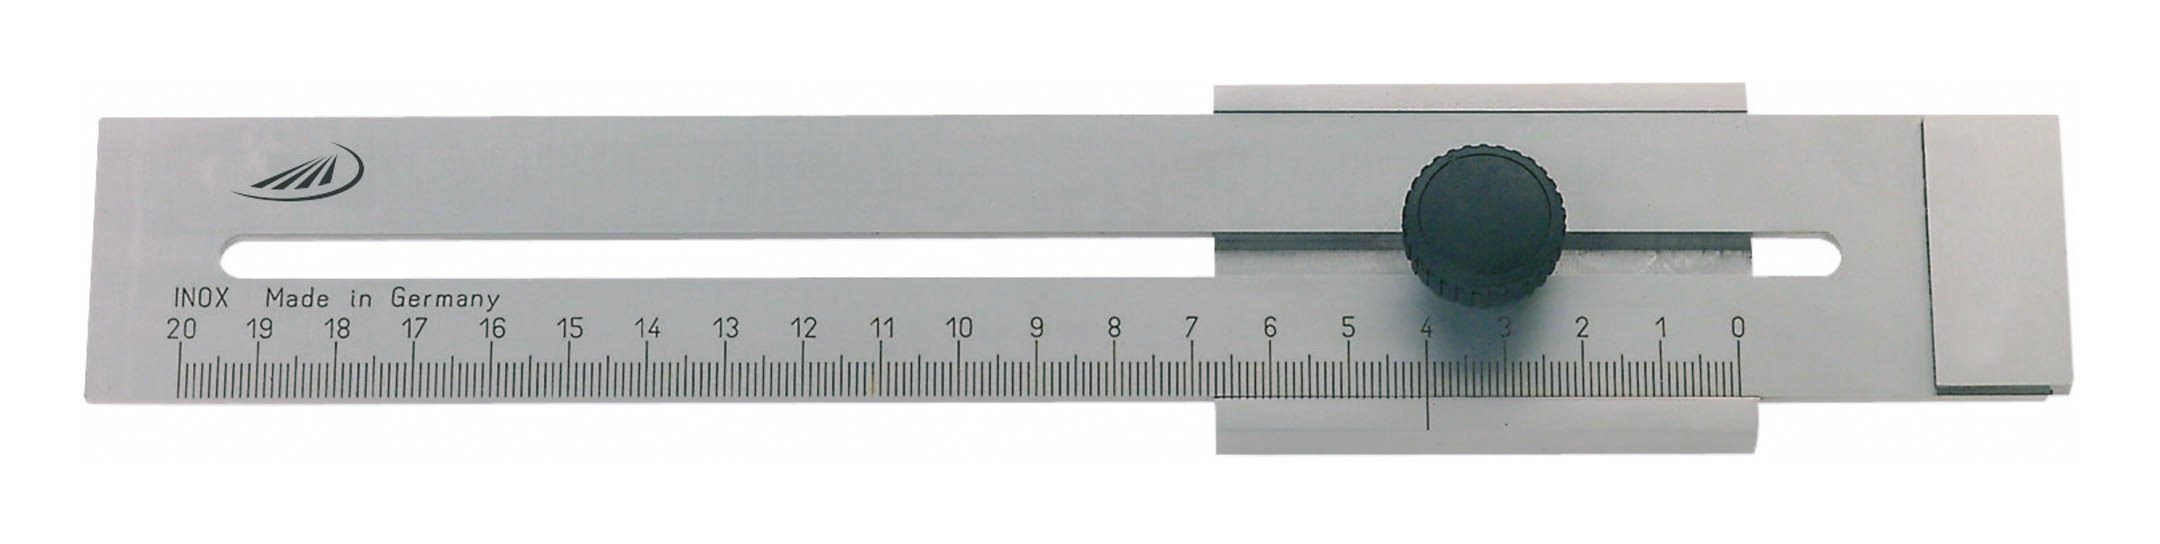 Präzisions Streichmaß rostfreier Stahl Messbereich 0-300mm 0,1mm Ablesung 